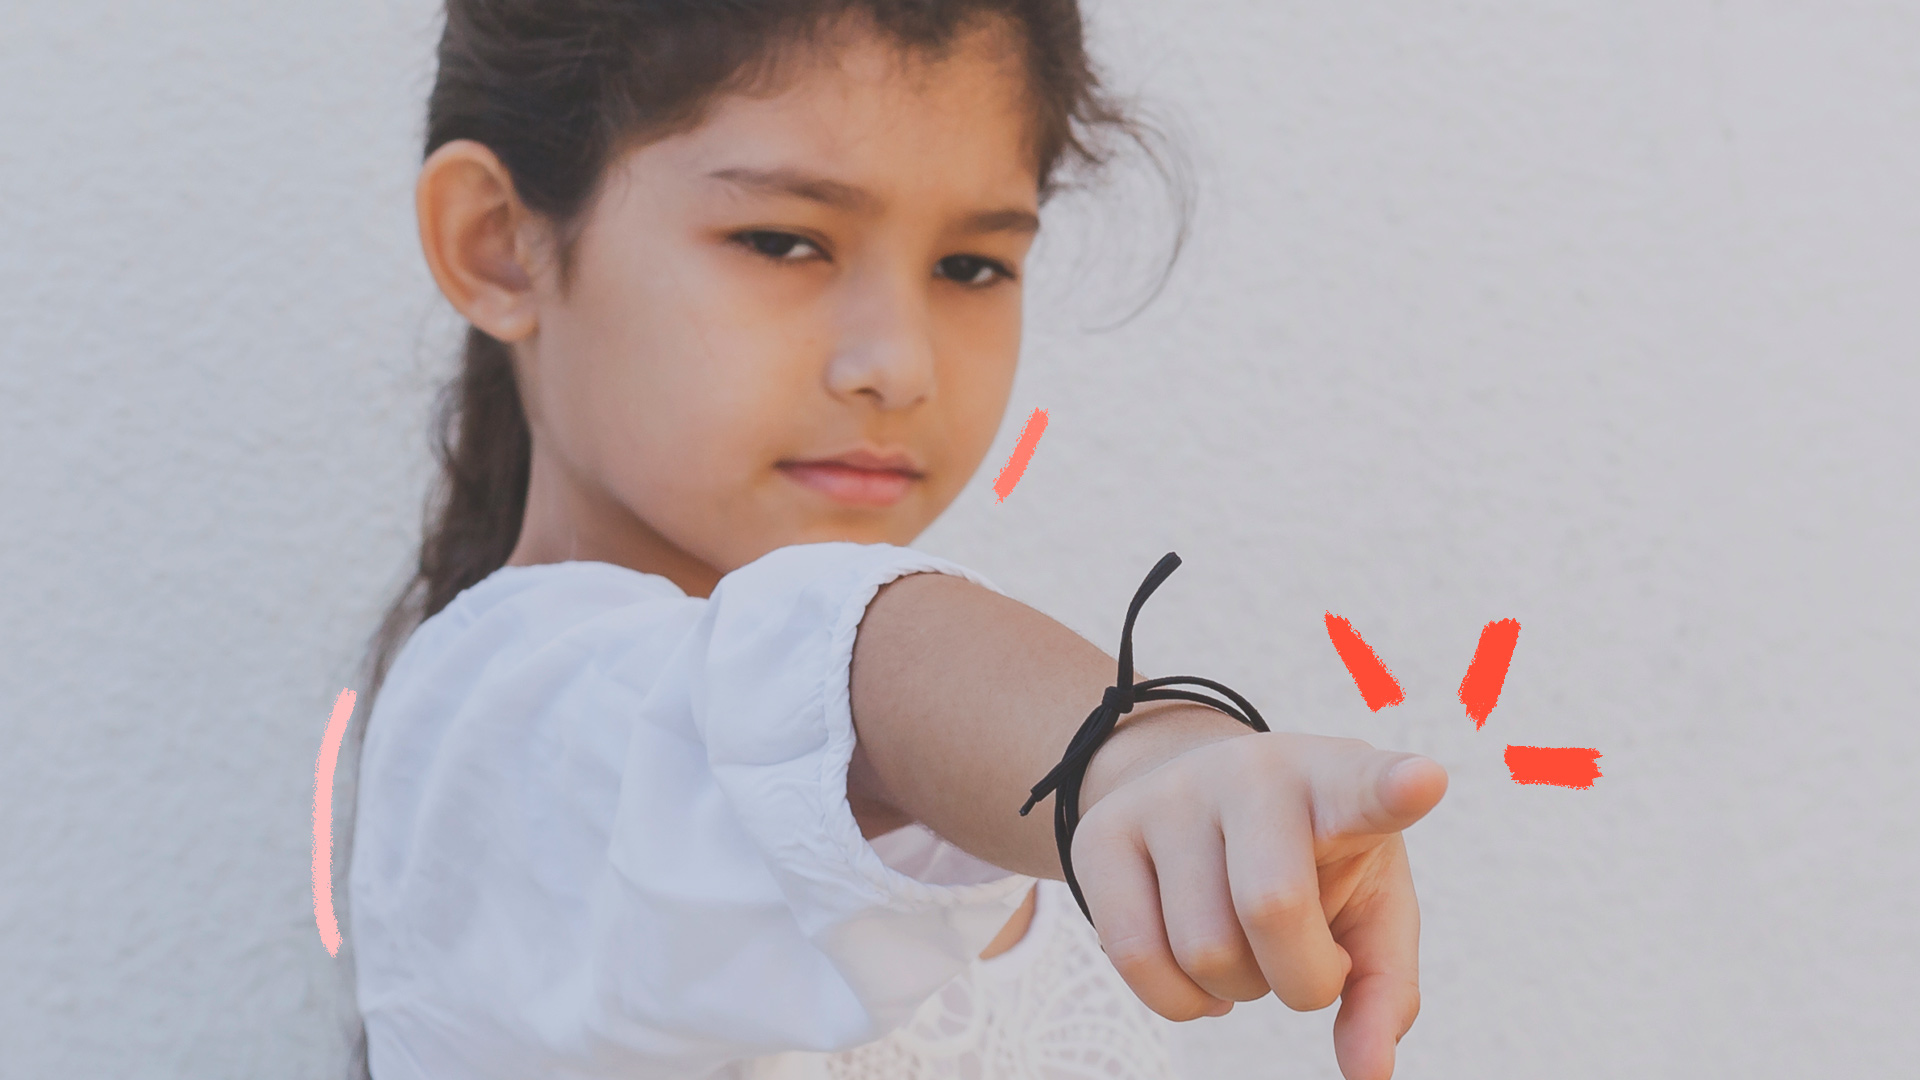 Foto de uma menina apontando o dedo. Ela veste branco, está com o cabelo preso e tem uma pulseira no braço. Texto sobre cancelamento e infância